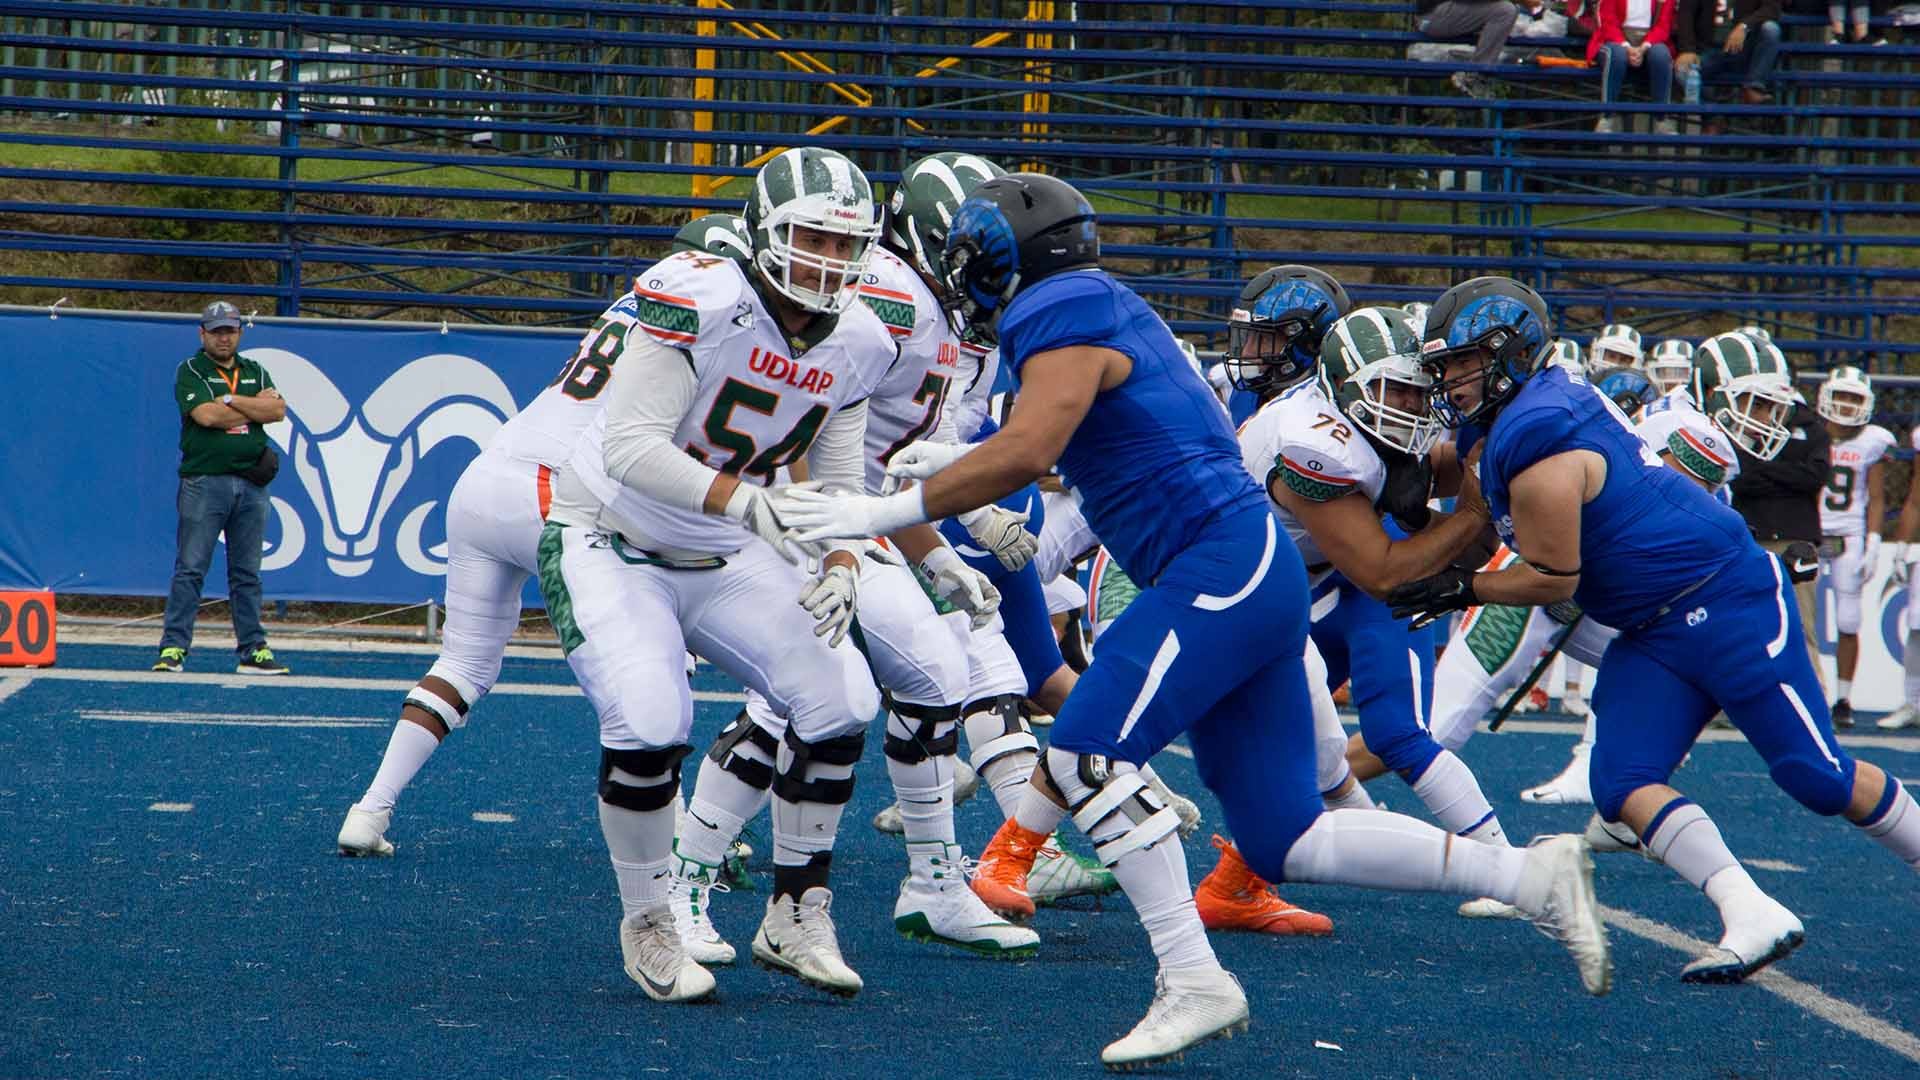 Primera derrota en casa en temporada 2018 para Borregos Toluca frente a los Aztecas de la UDLAP